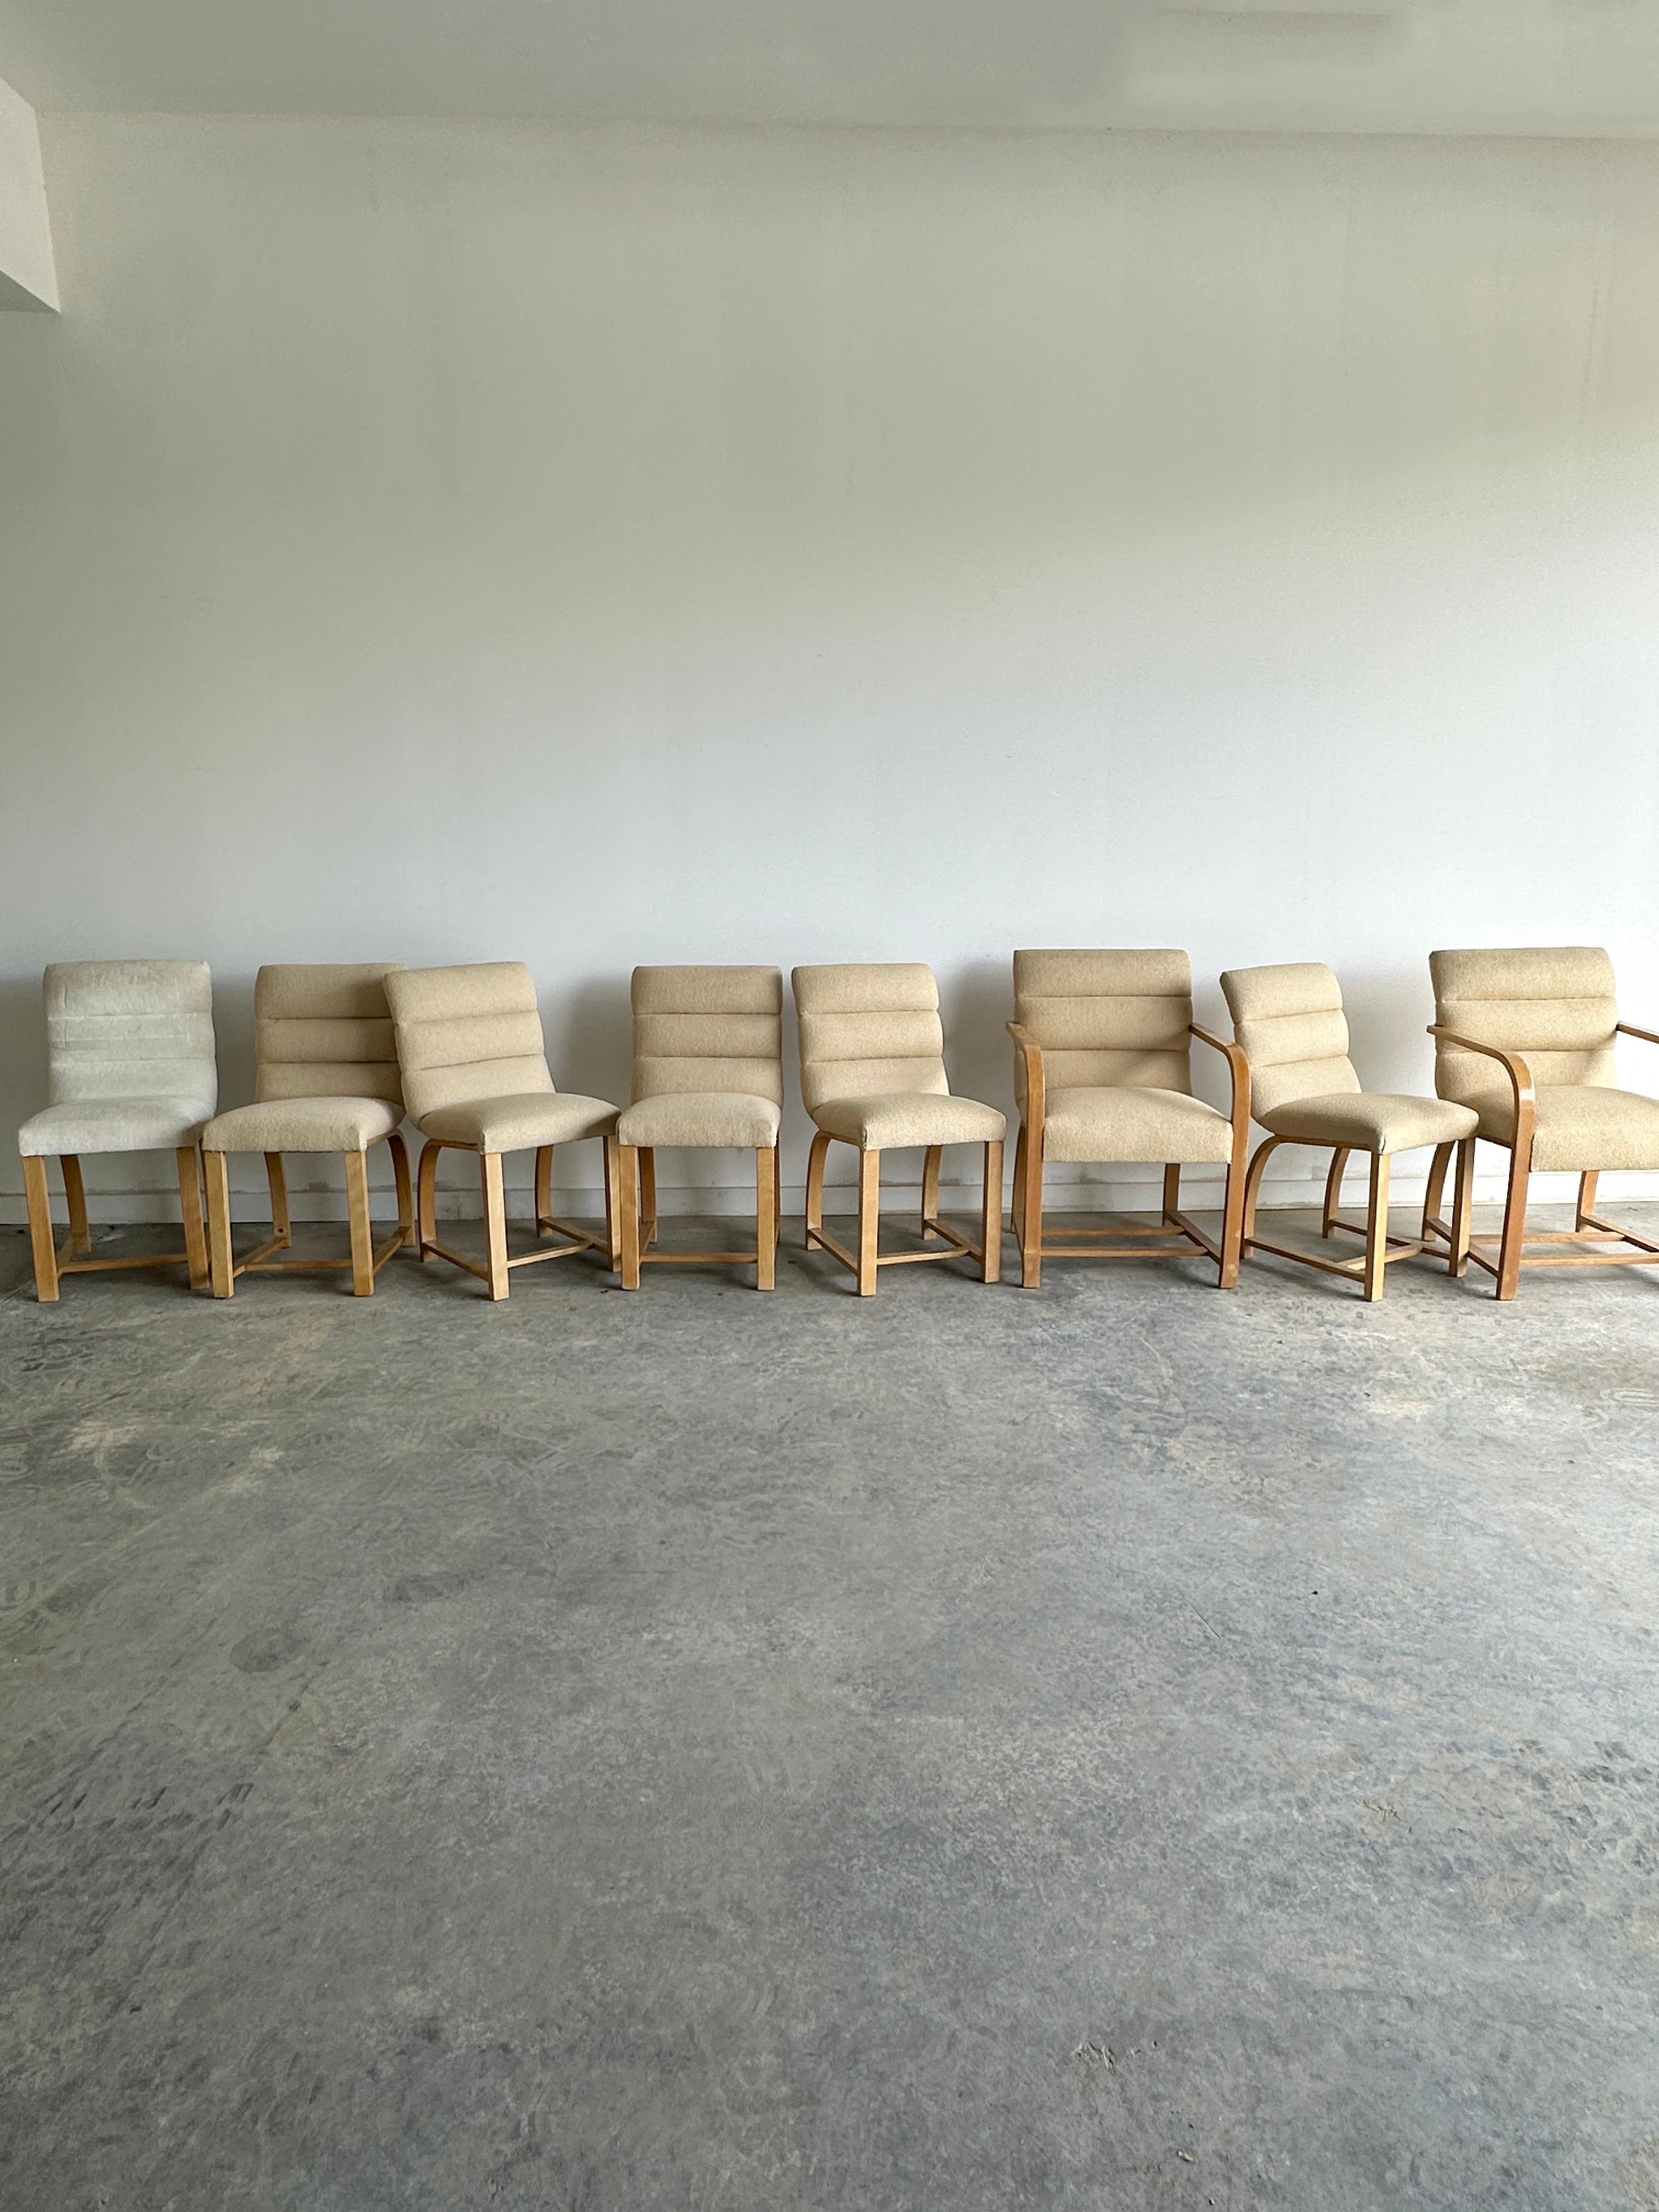 Diese acht Art-Deco-Esszimmerstühle von Gilbert Rohde für Heywood Wakefield sind ein stilvolles und anspruchsvolles Set, das die stromlinienförmige und moderne Ästhetik der 1930er Jahre widerspiegelt. Das Set besteht aus sechs normalen